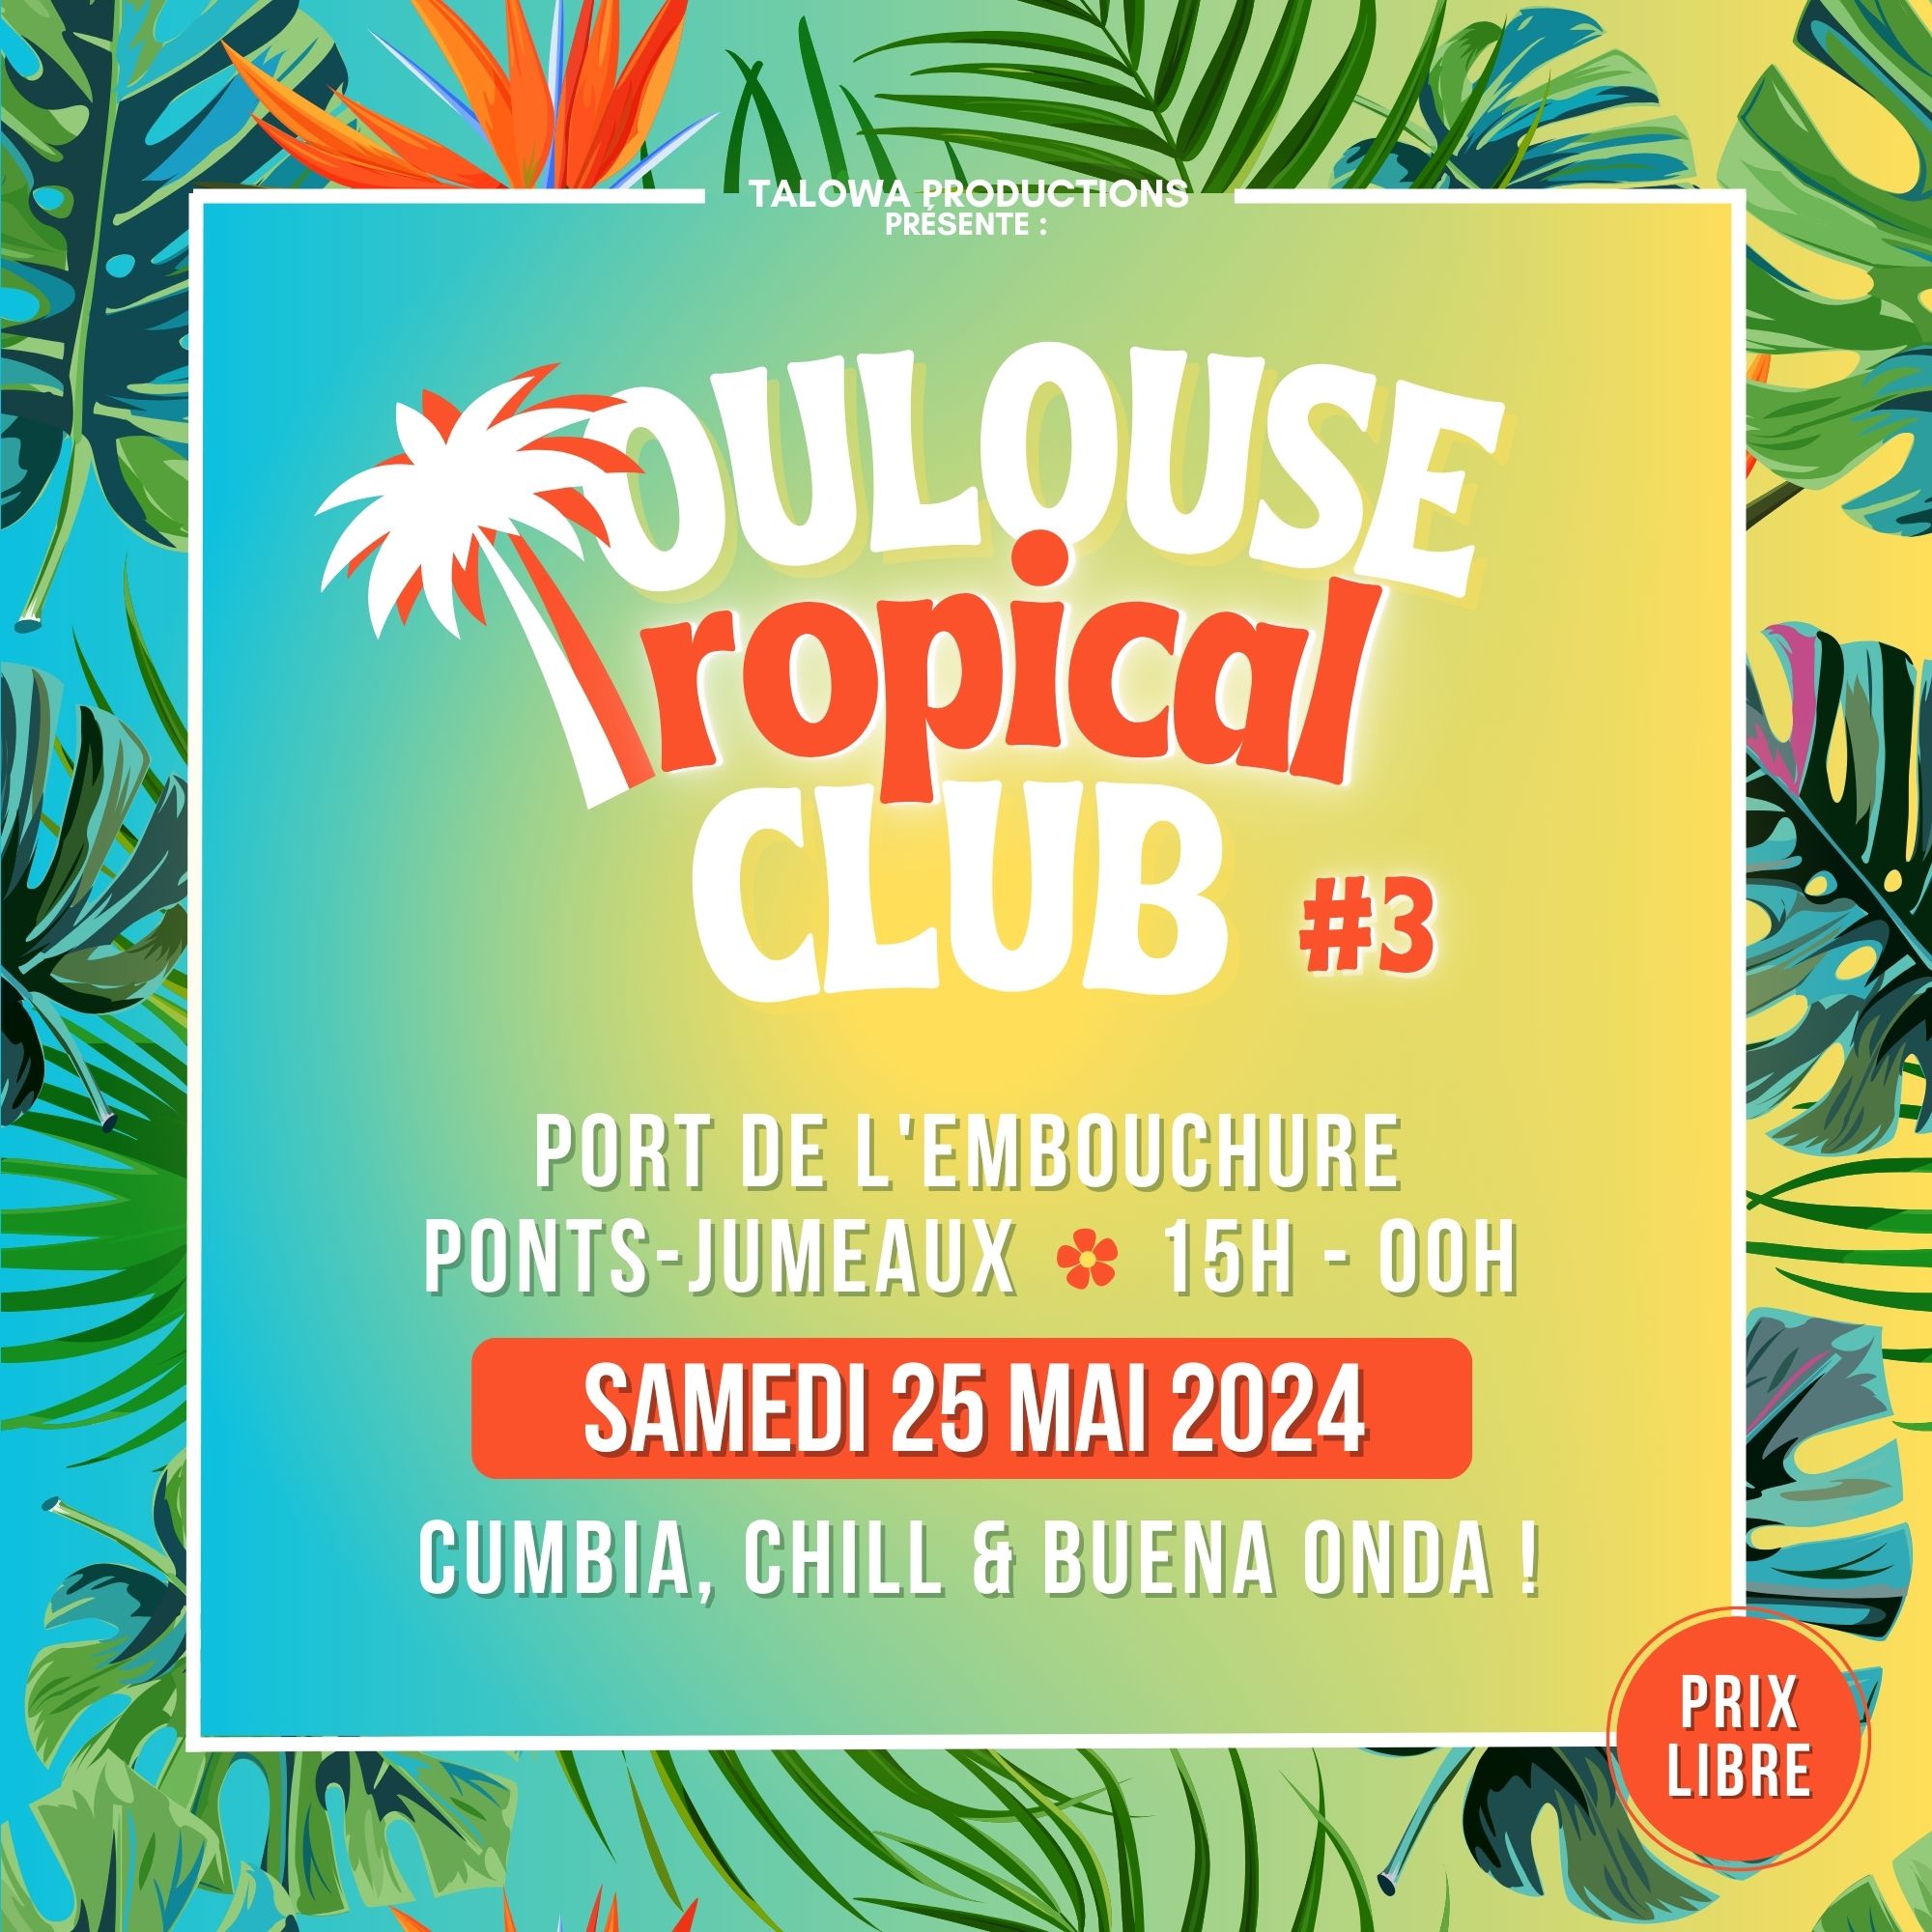 Toulouse Tropical Club #3 - Samedi 25 mai - Région Occitanie / Pyrénées ...